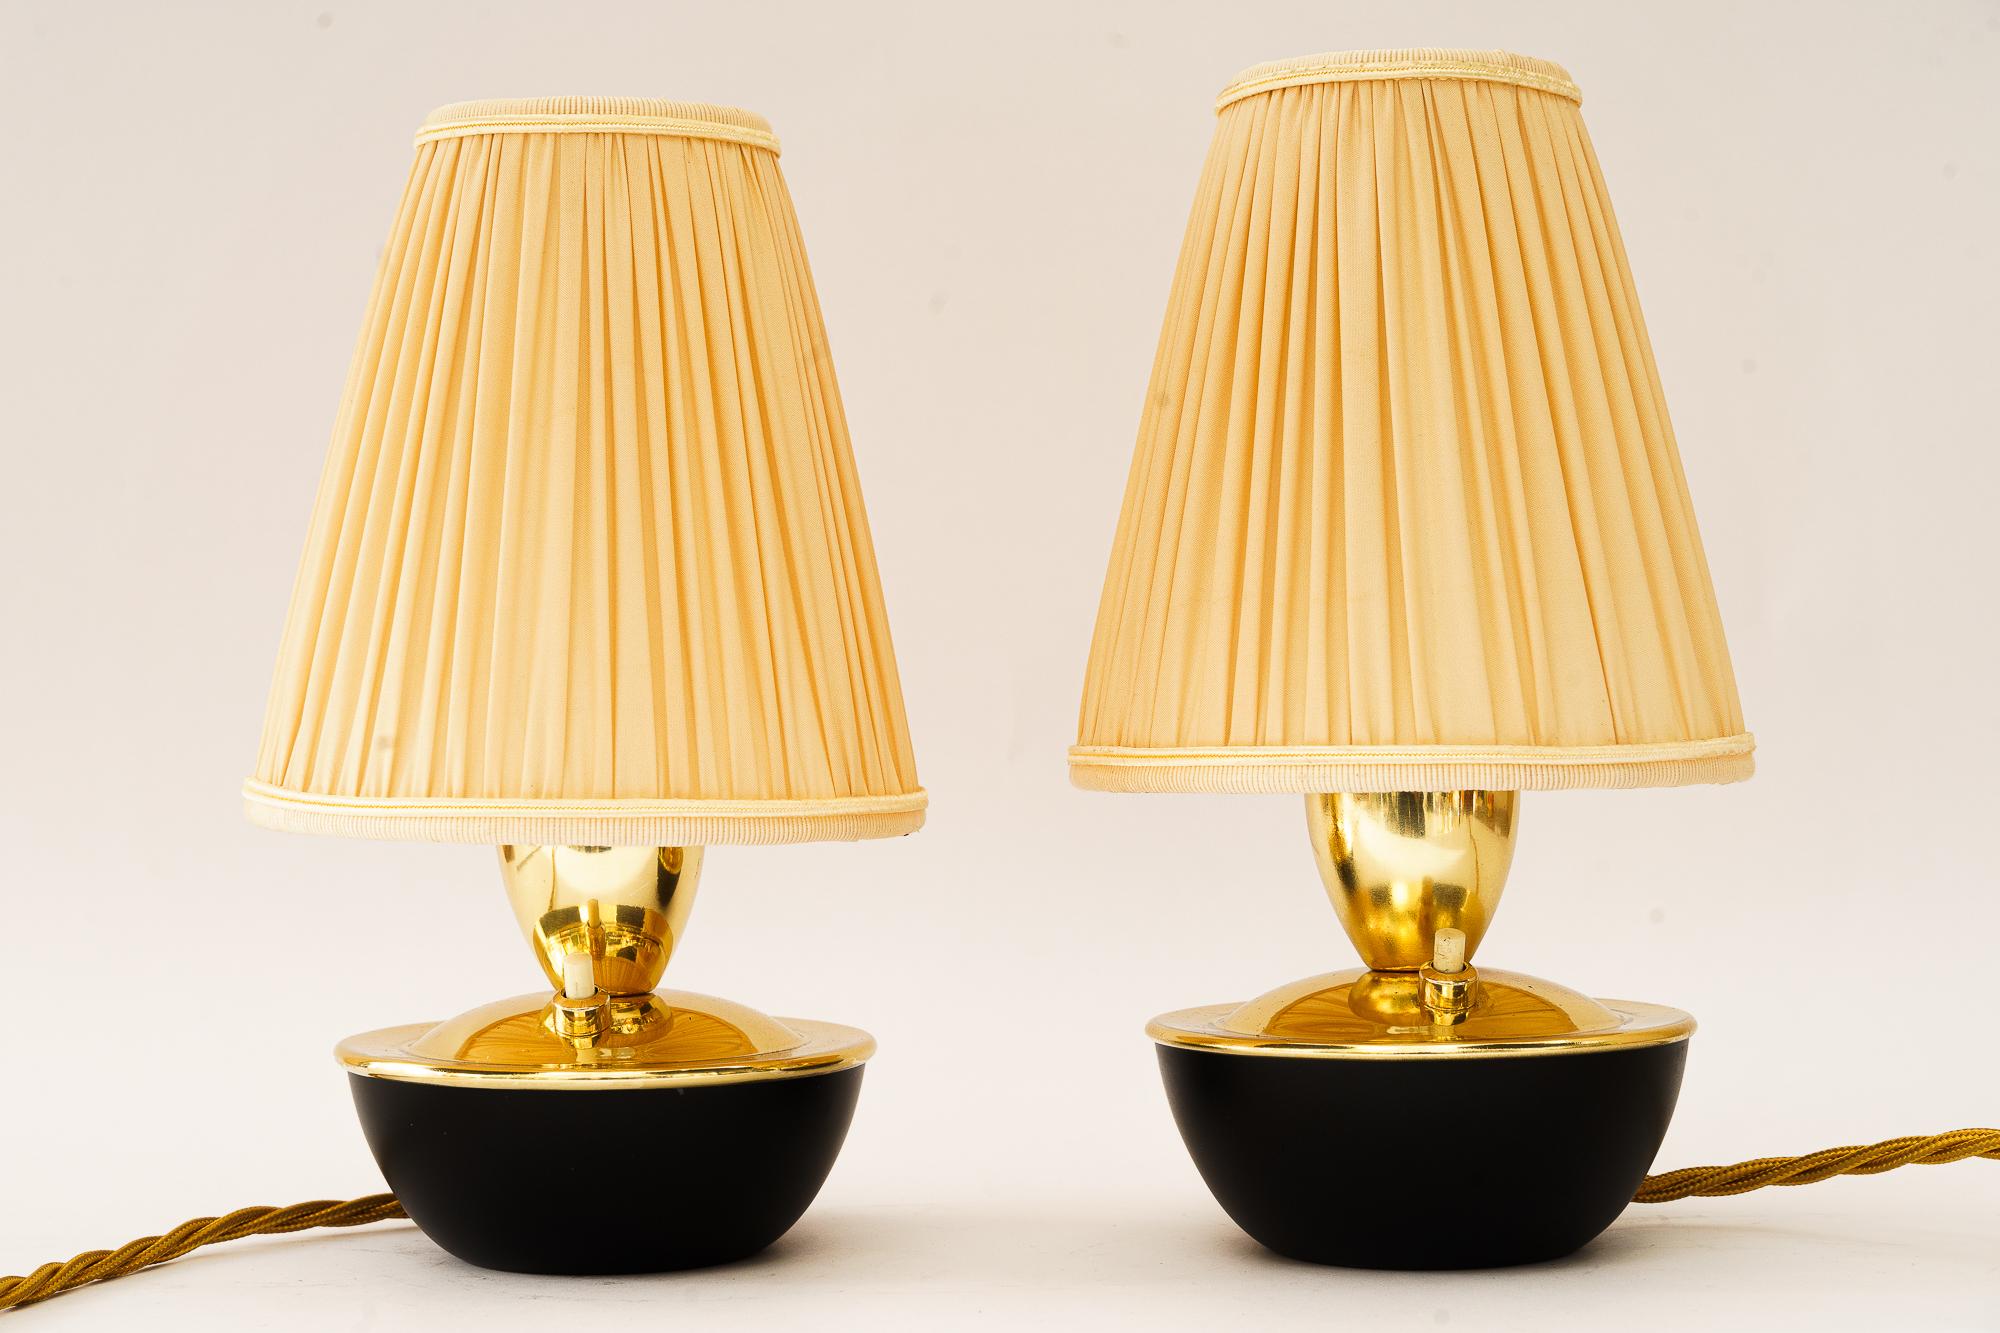 2 tischlampen von rupert nikoll wien um 1960er
Messing poliert und emailliert
Teilweise geschwärzt
Die Lampenschirme werden ersetzt (neu)